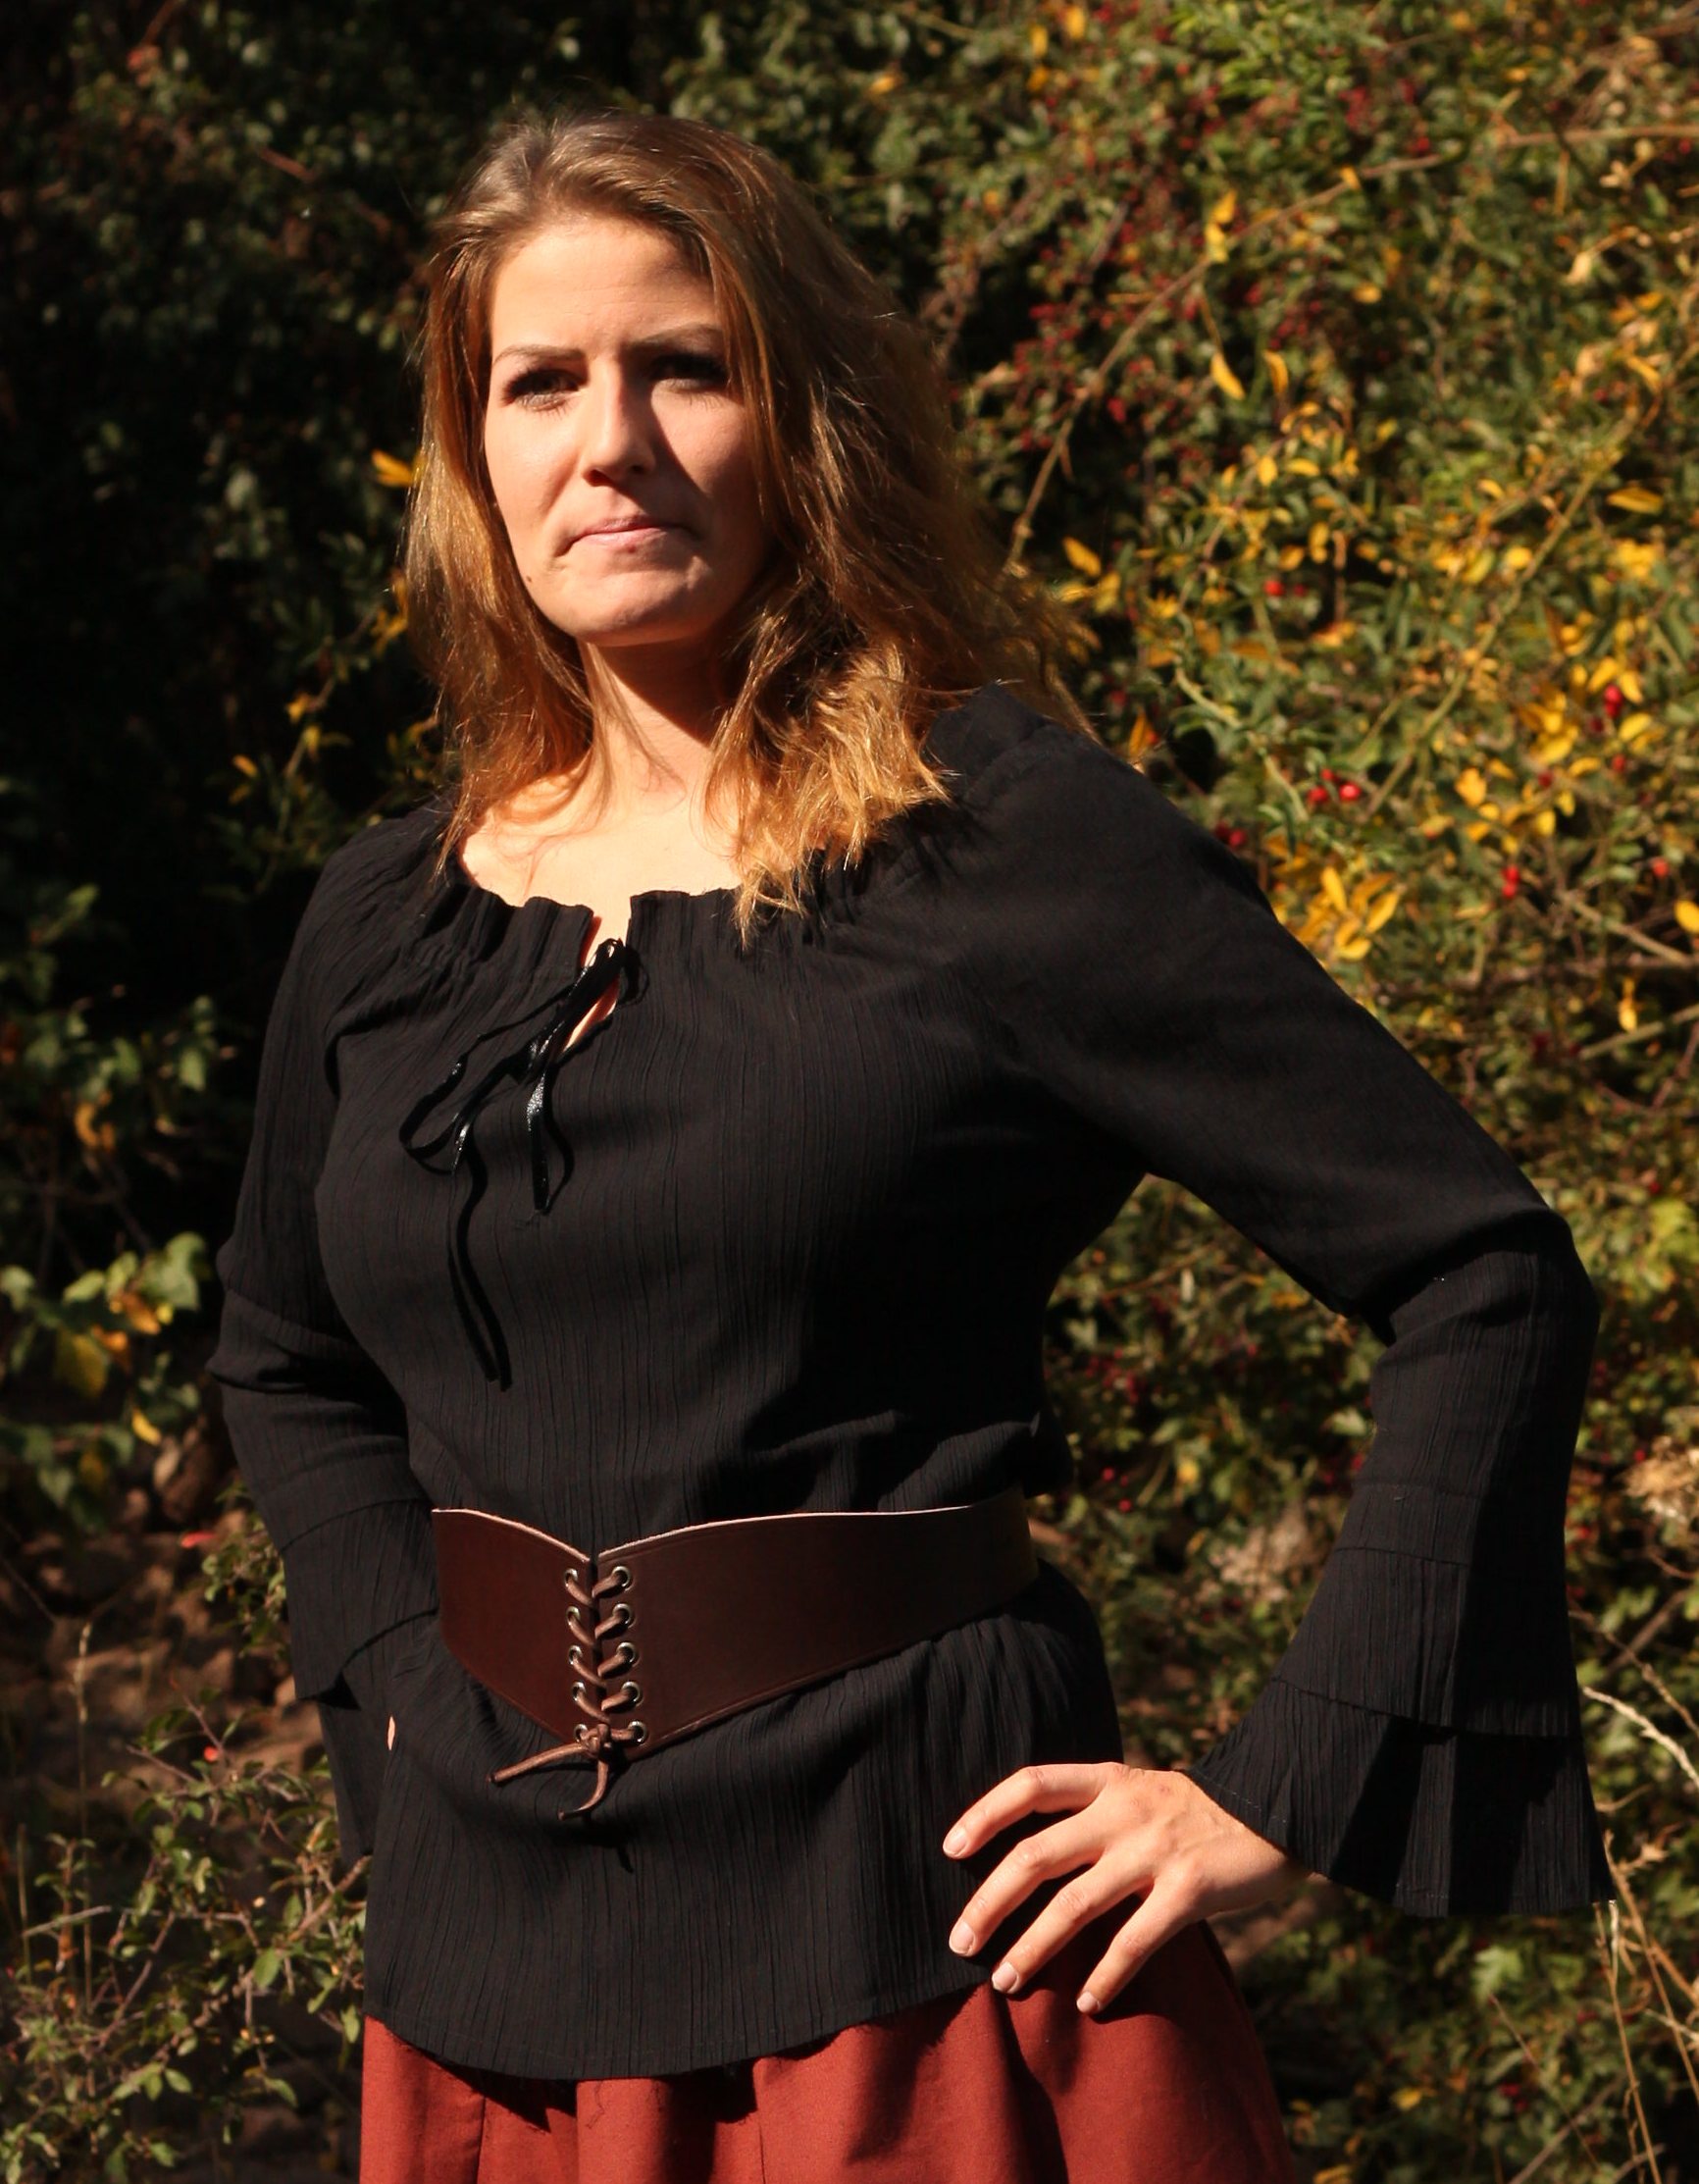 Im Versand Shop von Larp Fashion erhälst Du eine Mittelalter Bluse in schwarz, rot, grün oder braun